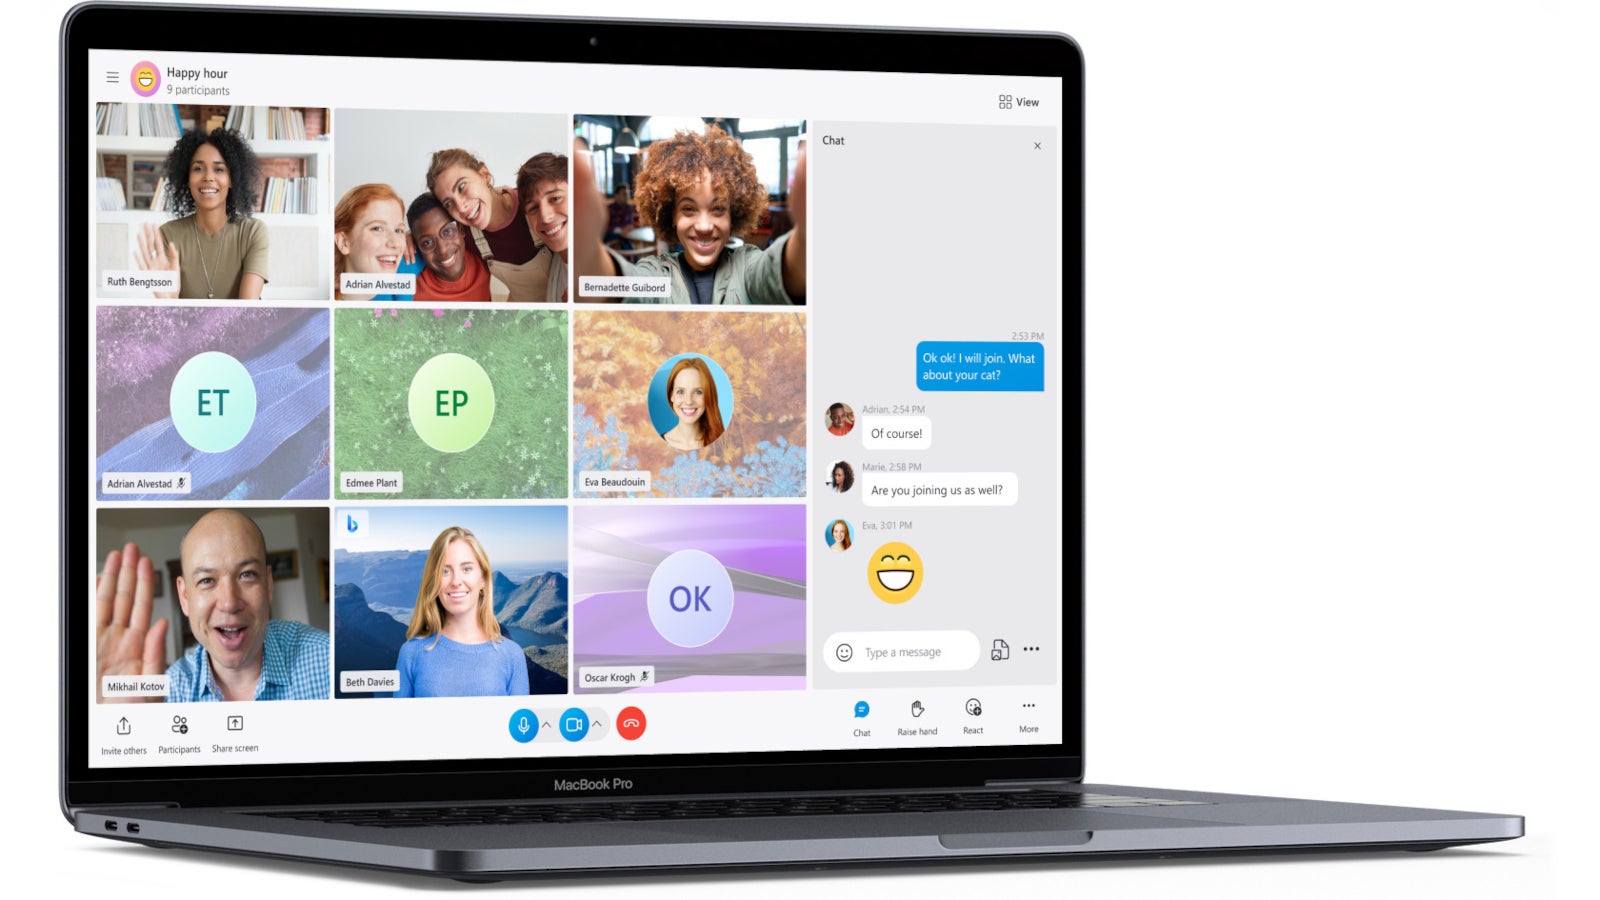 Důležitá aktualizace Skype s novými funkcemi vstoupila v prosinci do života